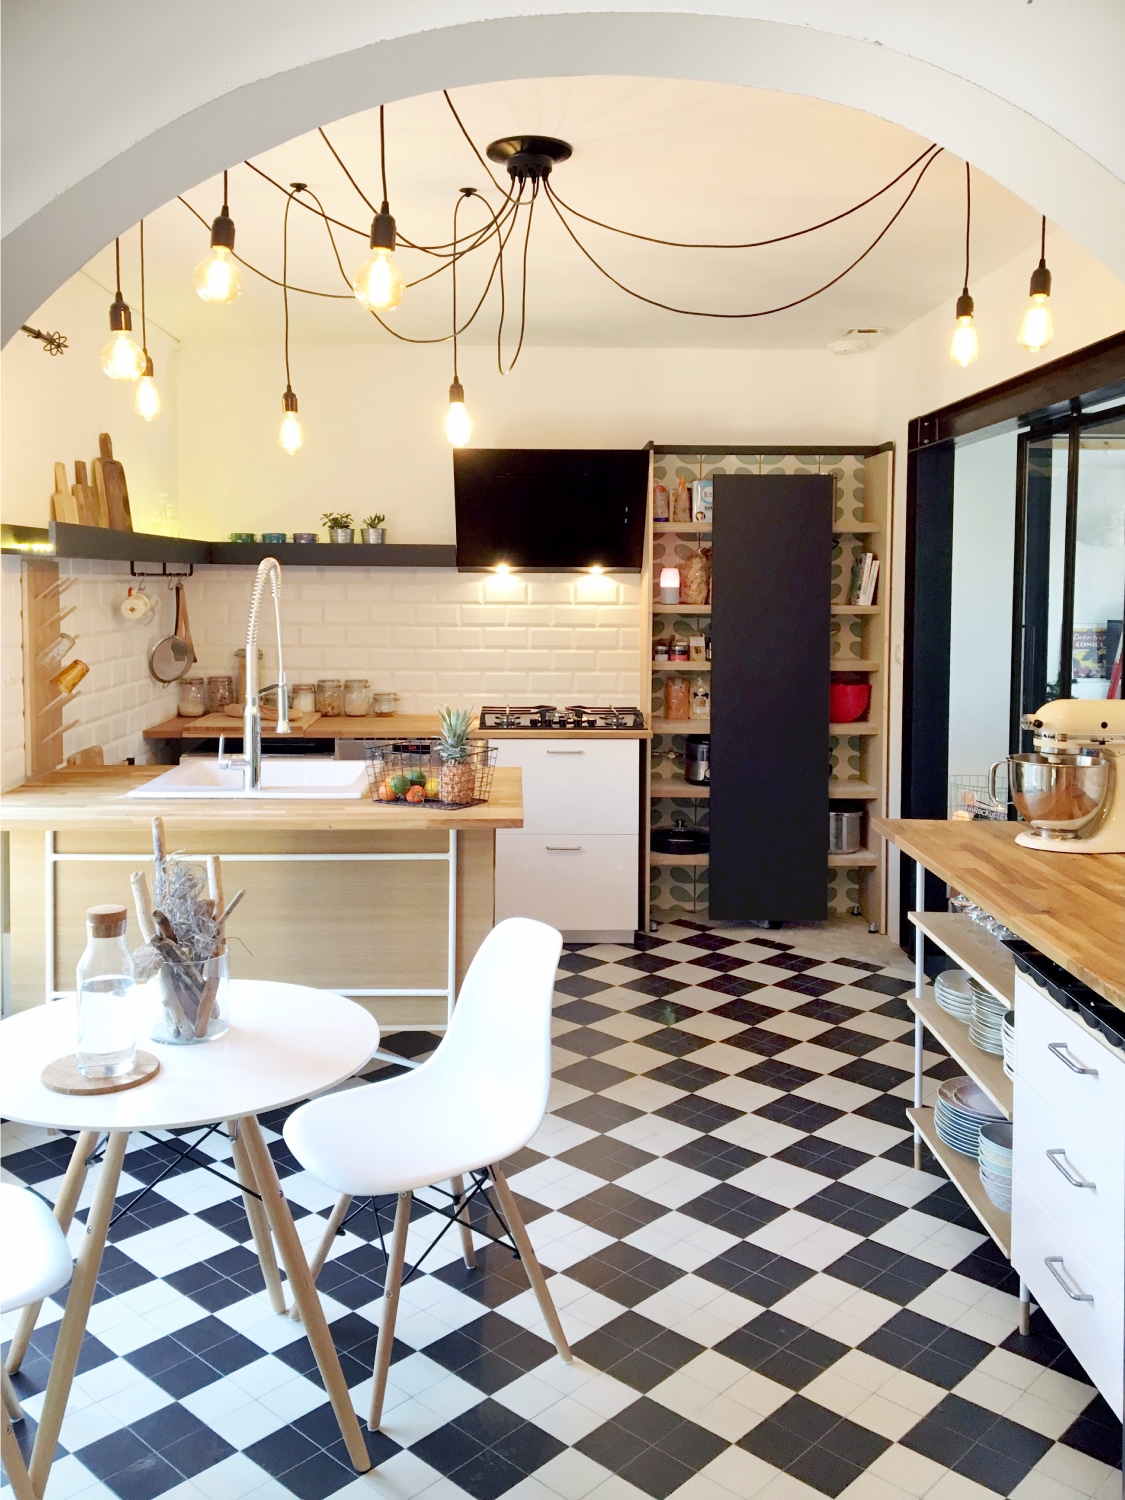 Lire la suite à propos de l’article CUISINE • Création d’une cuisine originale dans une maison rénovée à Toulouse